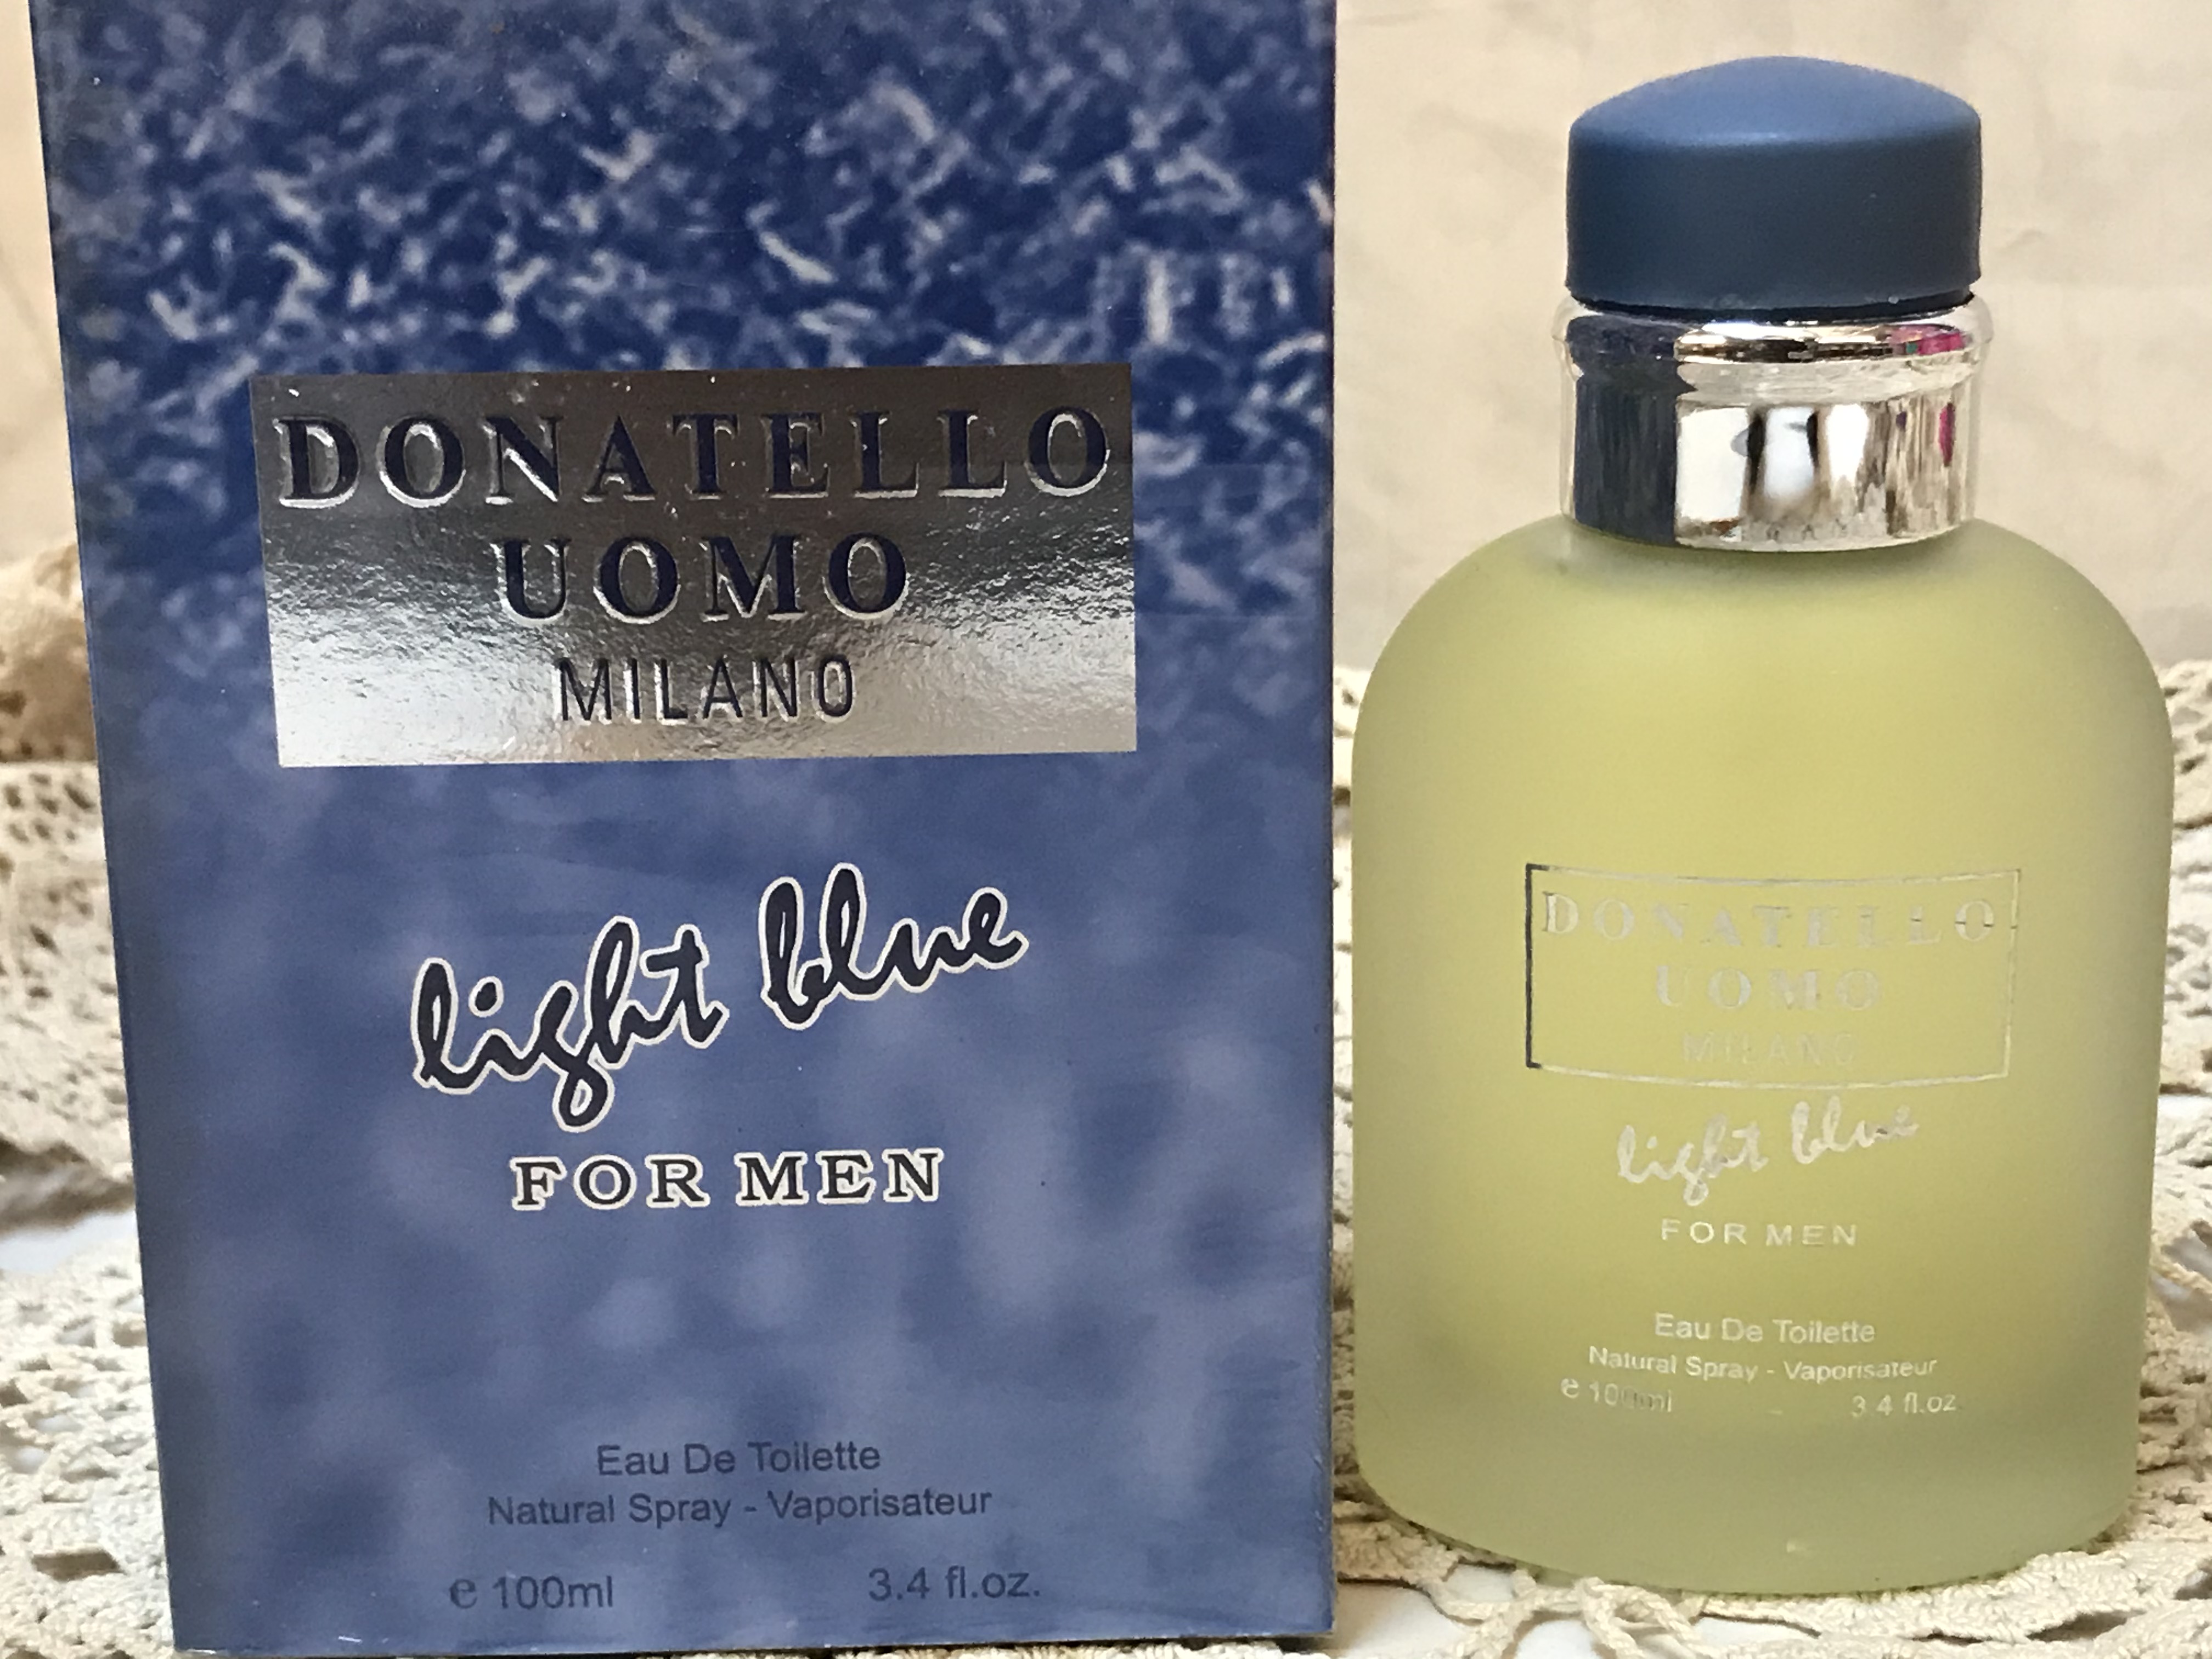 Donatello Uomo Milano Light Blue for Men Cologne Fragrance 3.4 floz 100ml  EDT